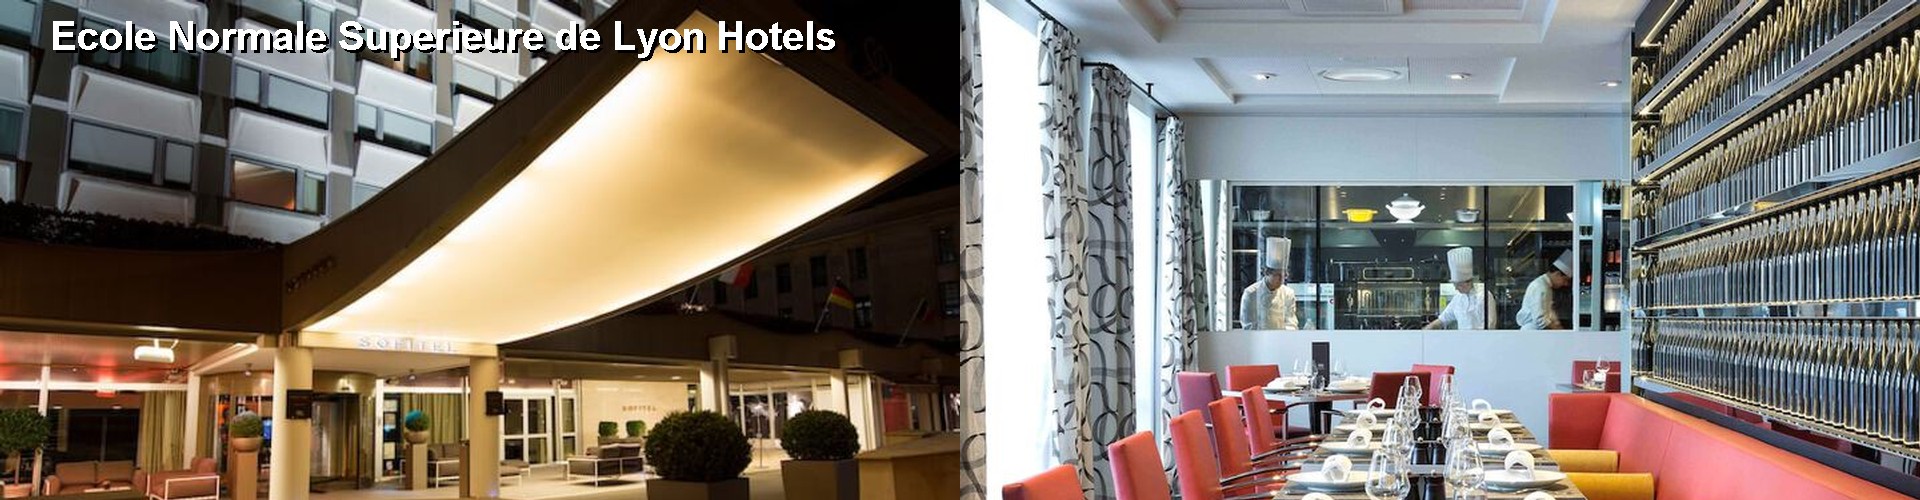 5 Best Hotels near Ecole Normale Superieure de Lyon